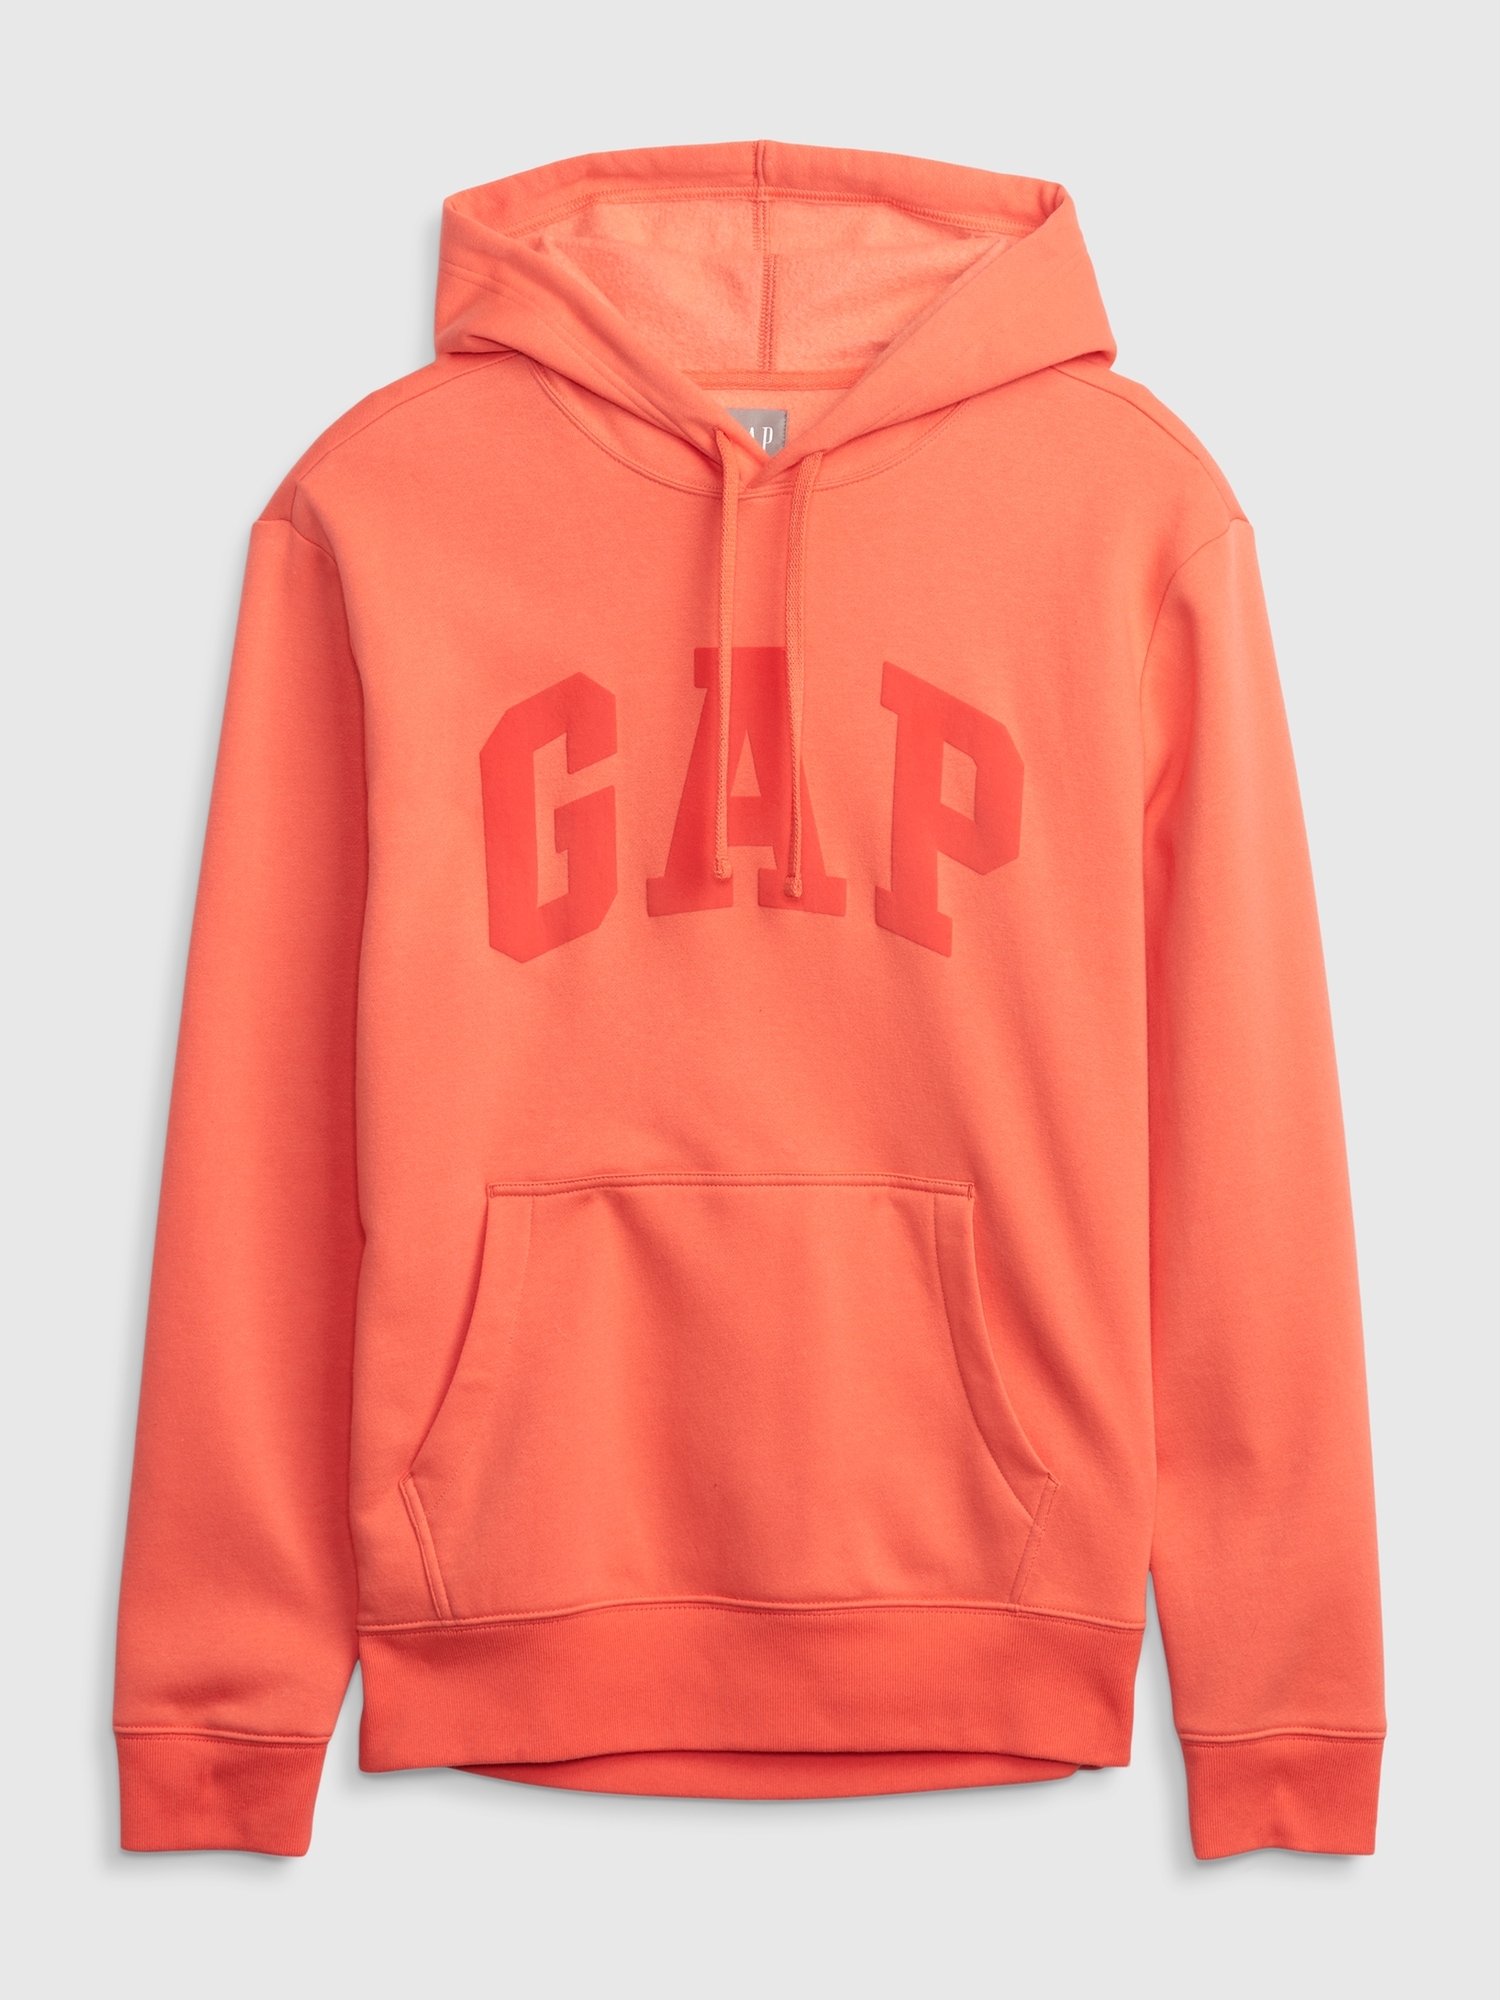 Vintage Soft Gap Logo Hoodie | Gap